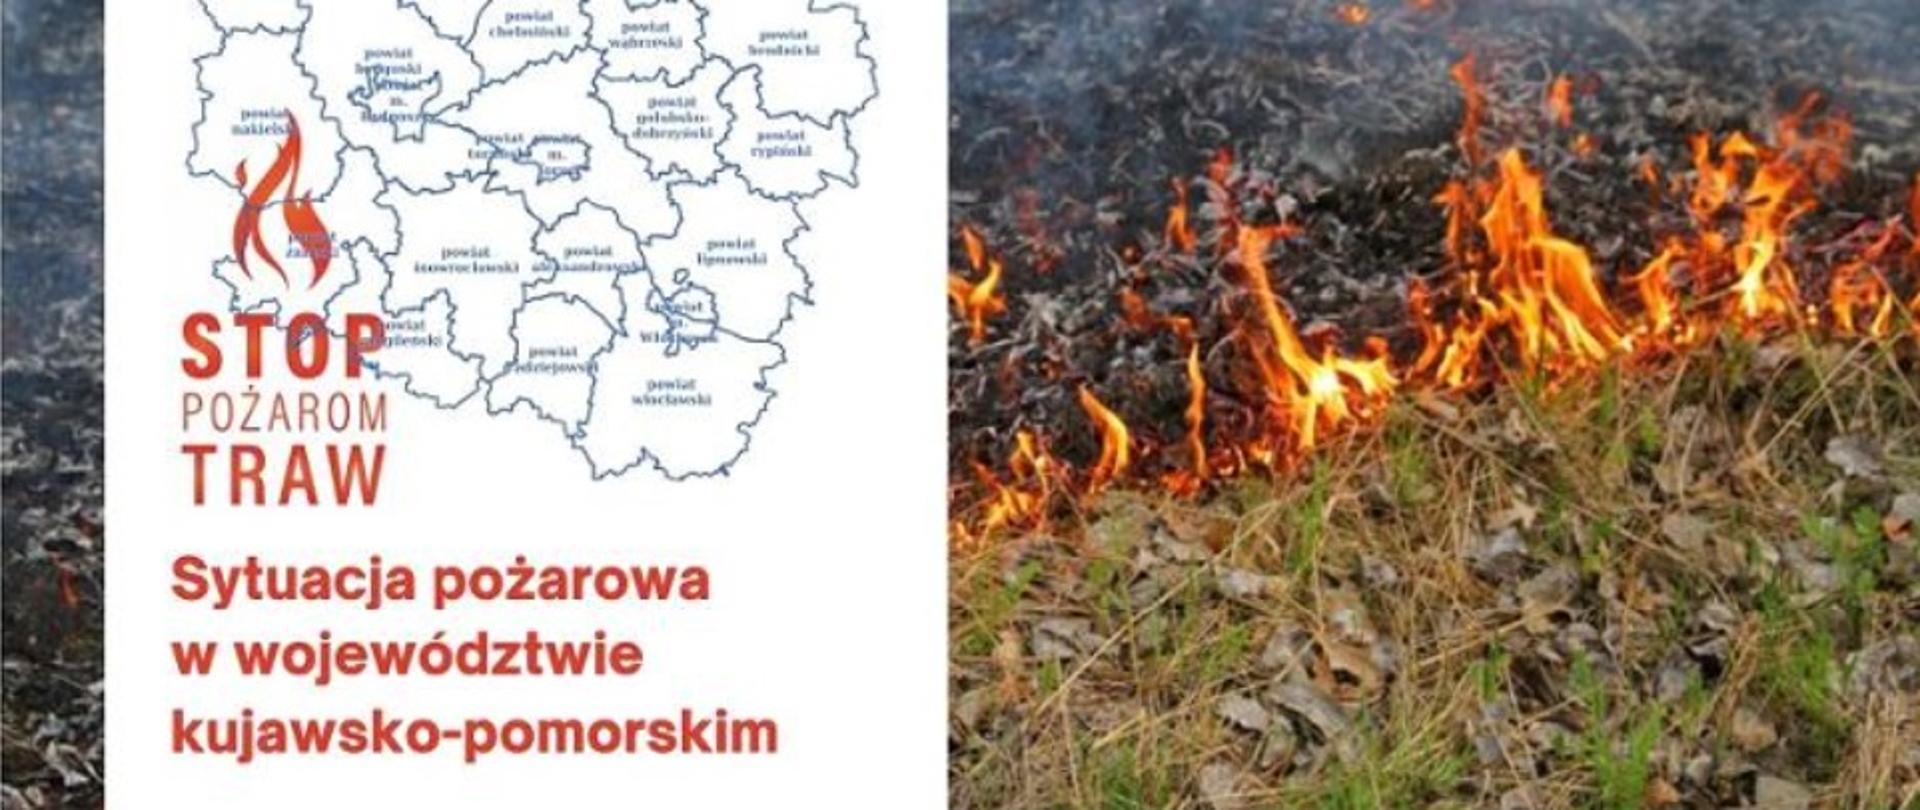 Sytuacja pożarowa w województwie - STOP POŻAROM TRAW